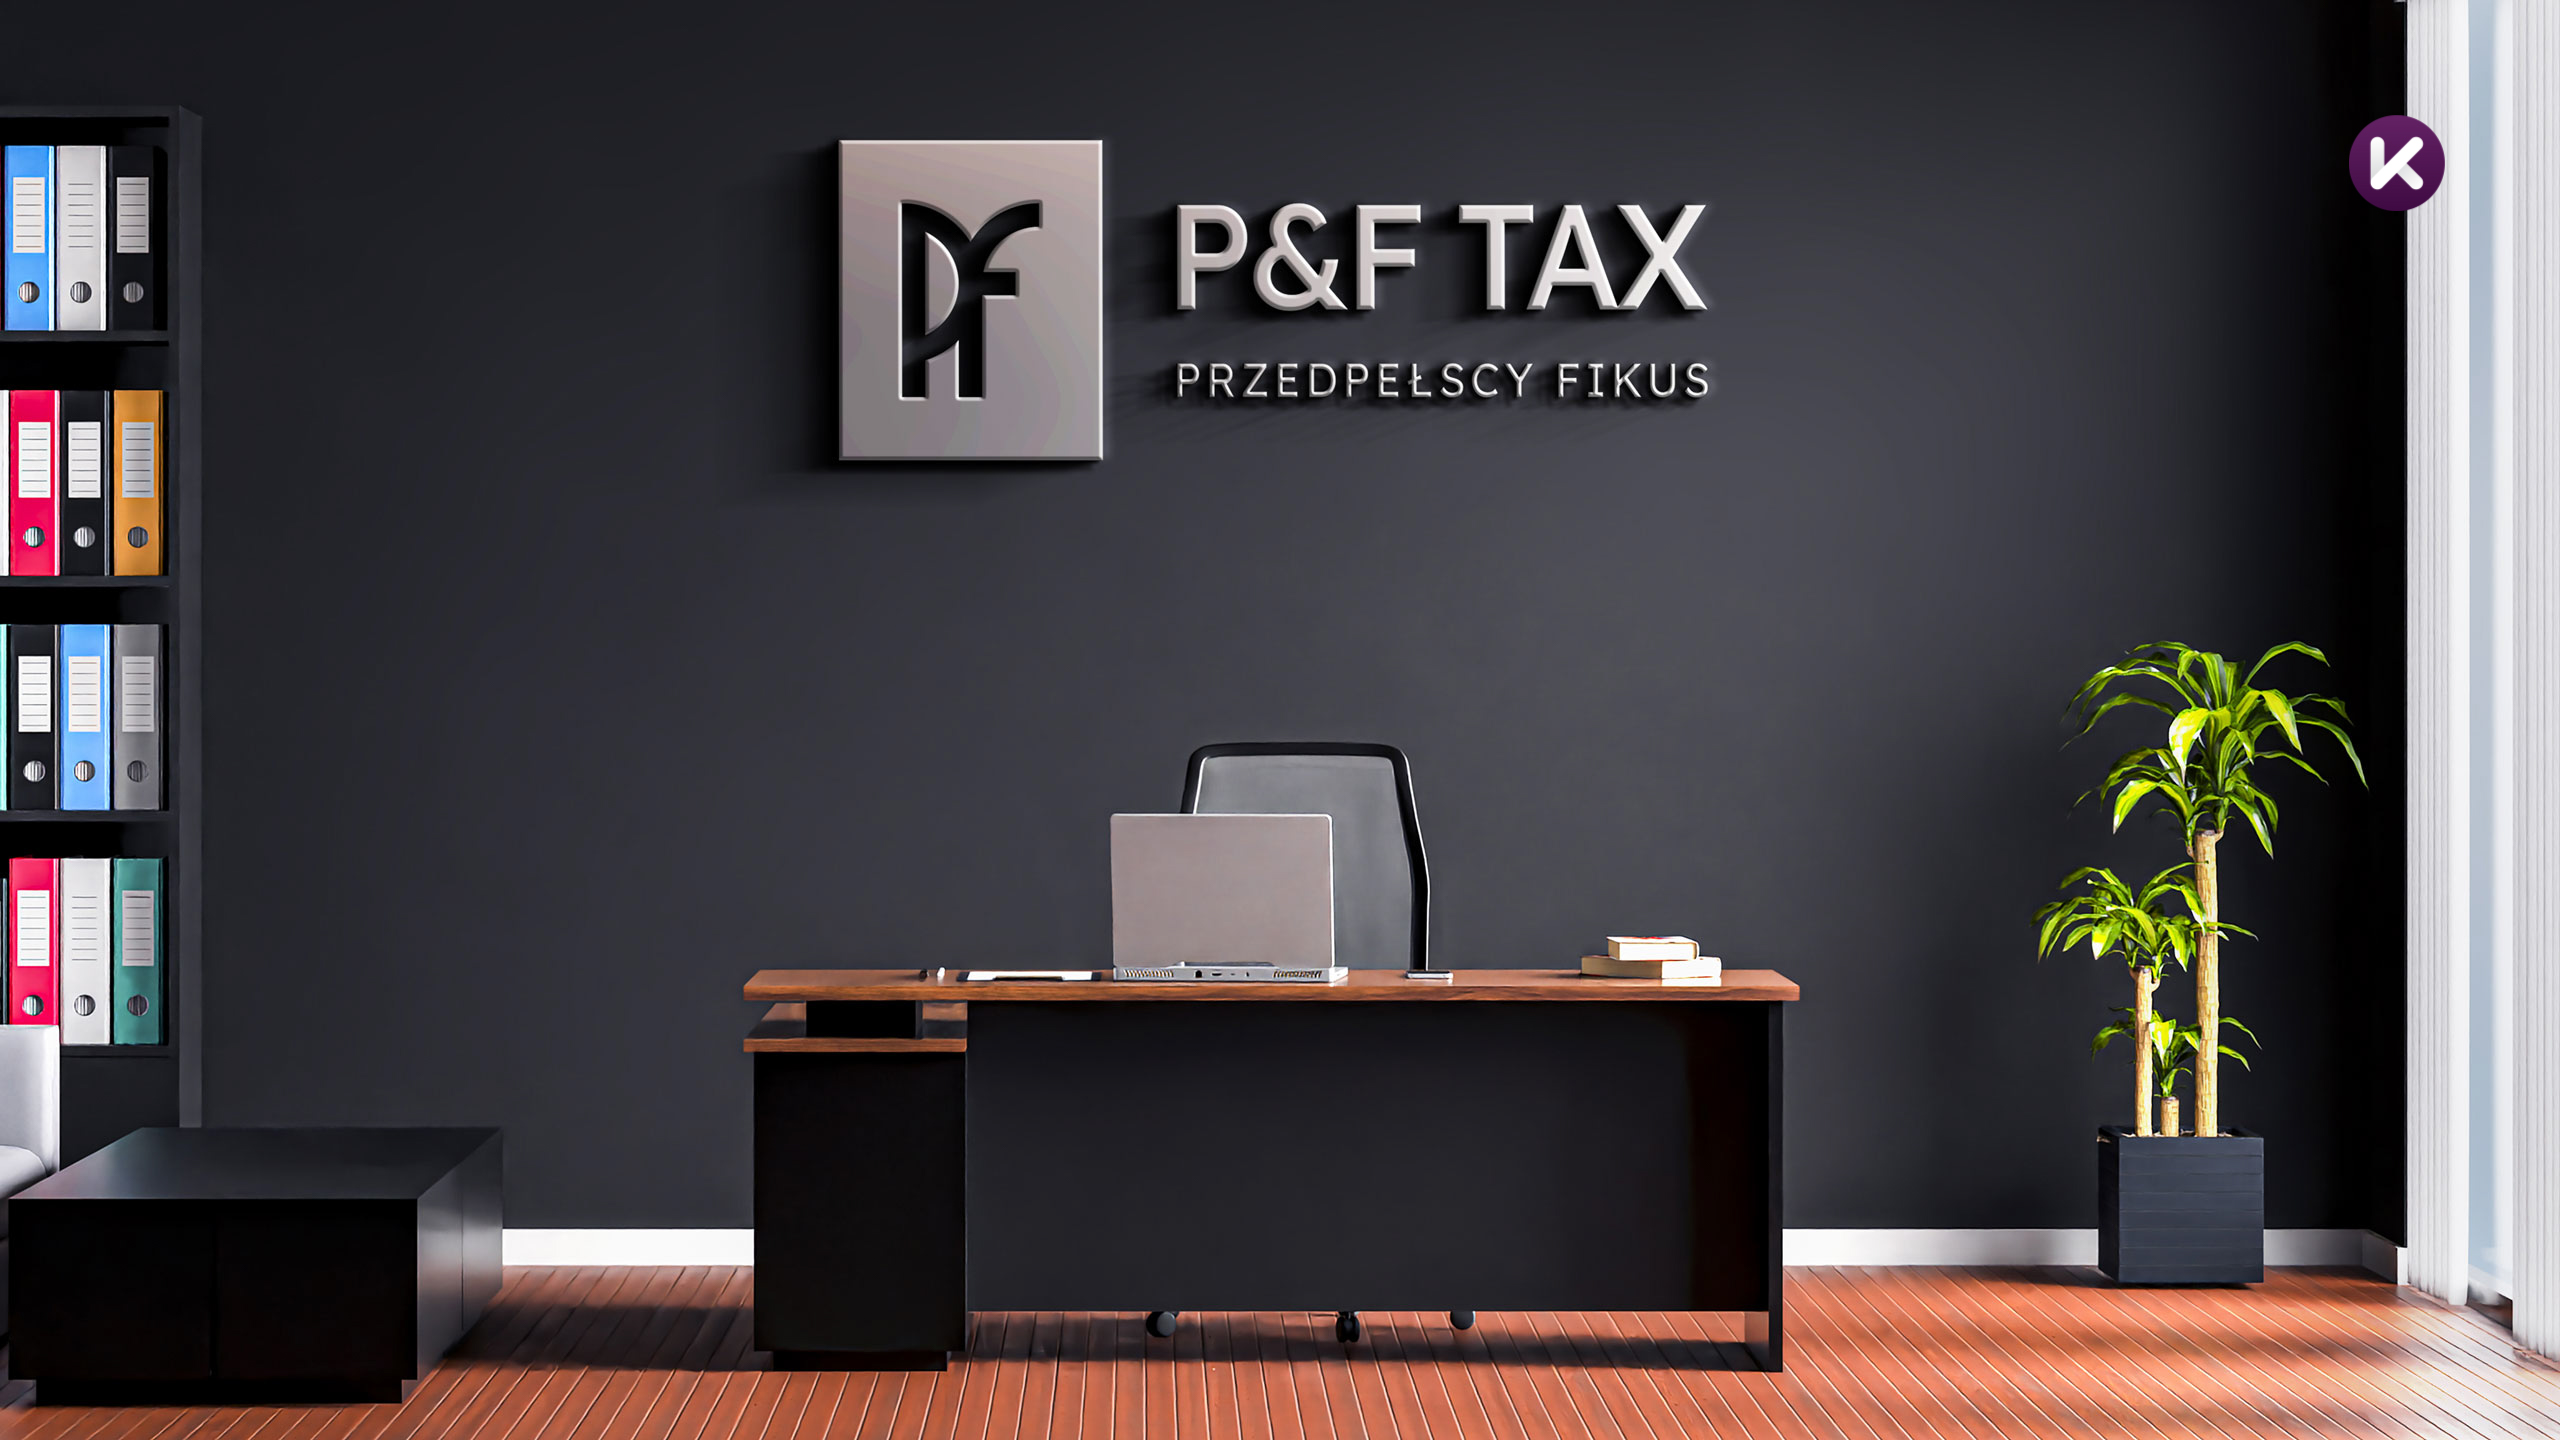 Logo firmy P&F Tax na ścianie w biurze